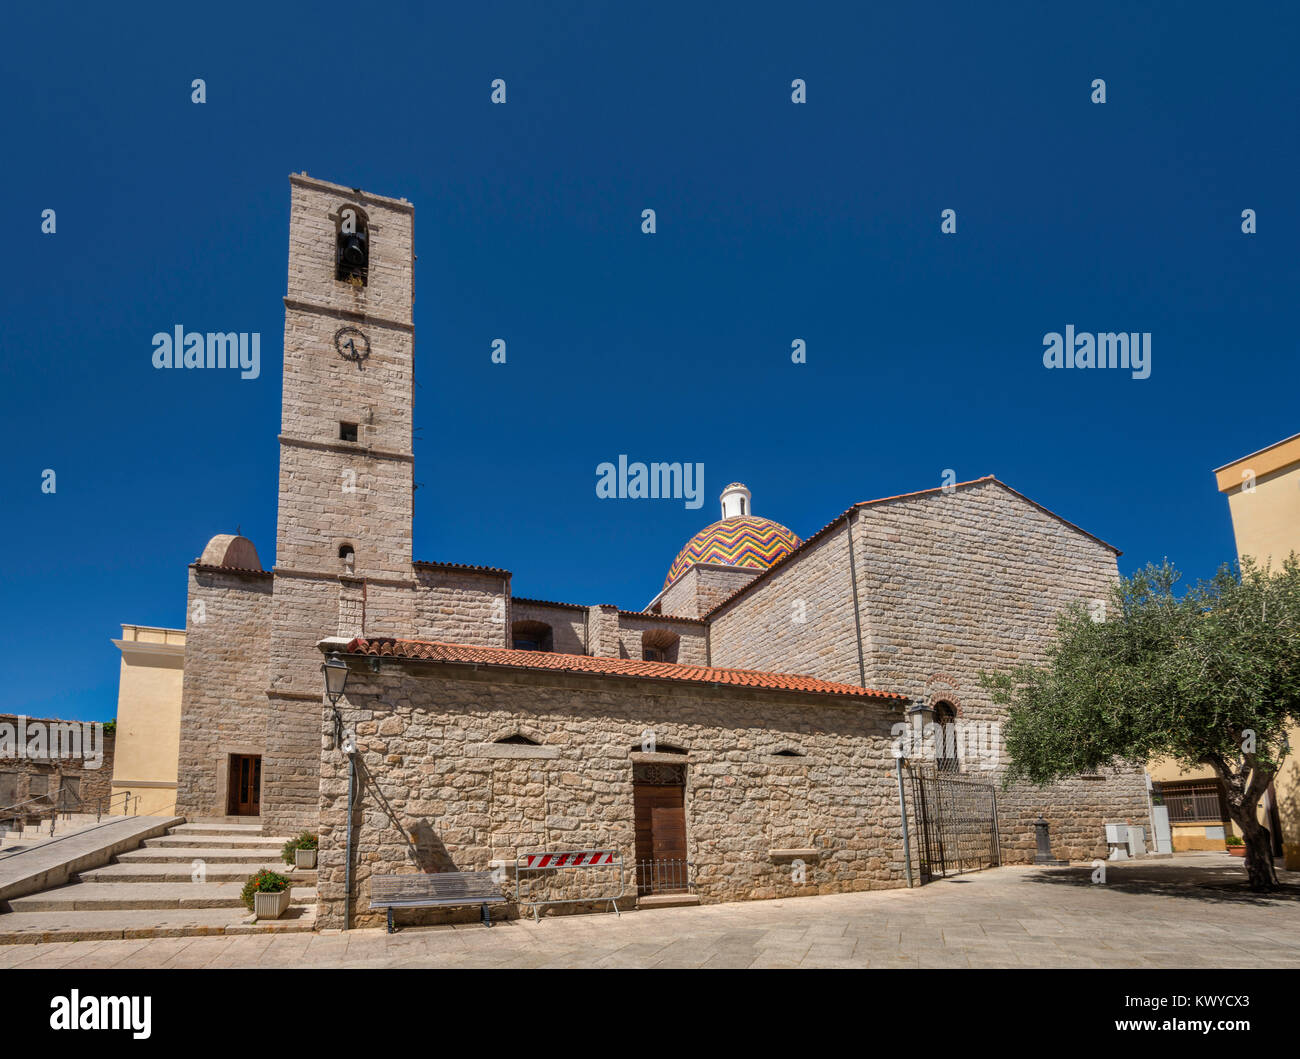 Chiesa di San Paolo, 18th century church at Piazza Santa Croce in Olbia, Gallura region, Sassari province, Sardinia, Italy Stock Photo